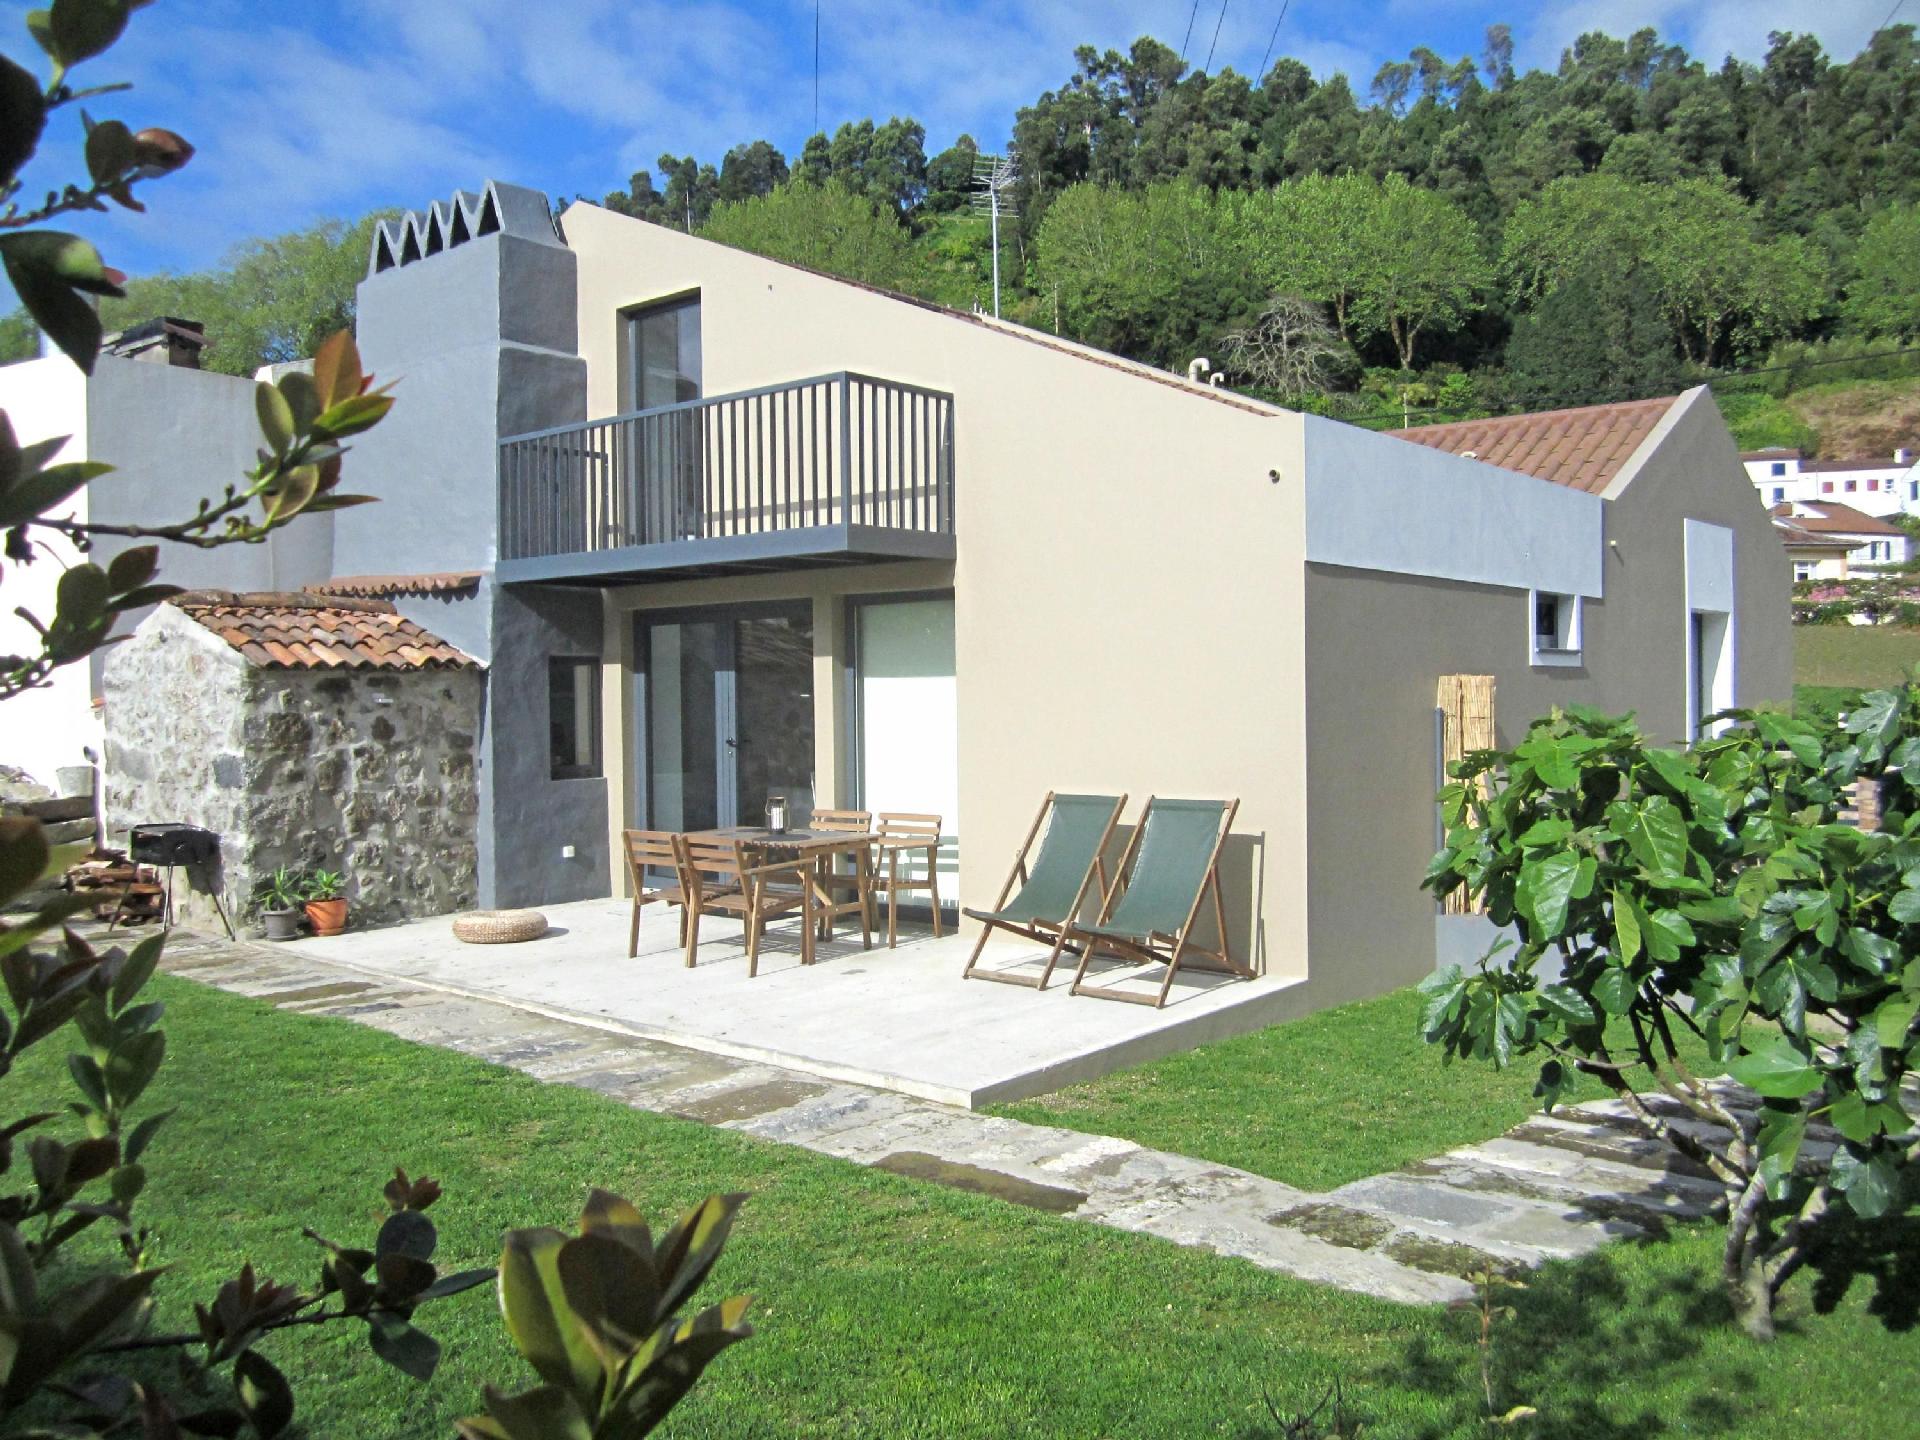 Ferienhaus in Furnas mit Terrasse, Garten und Gril Ferienhaus in Portugal